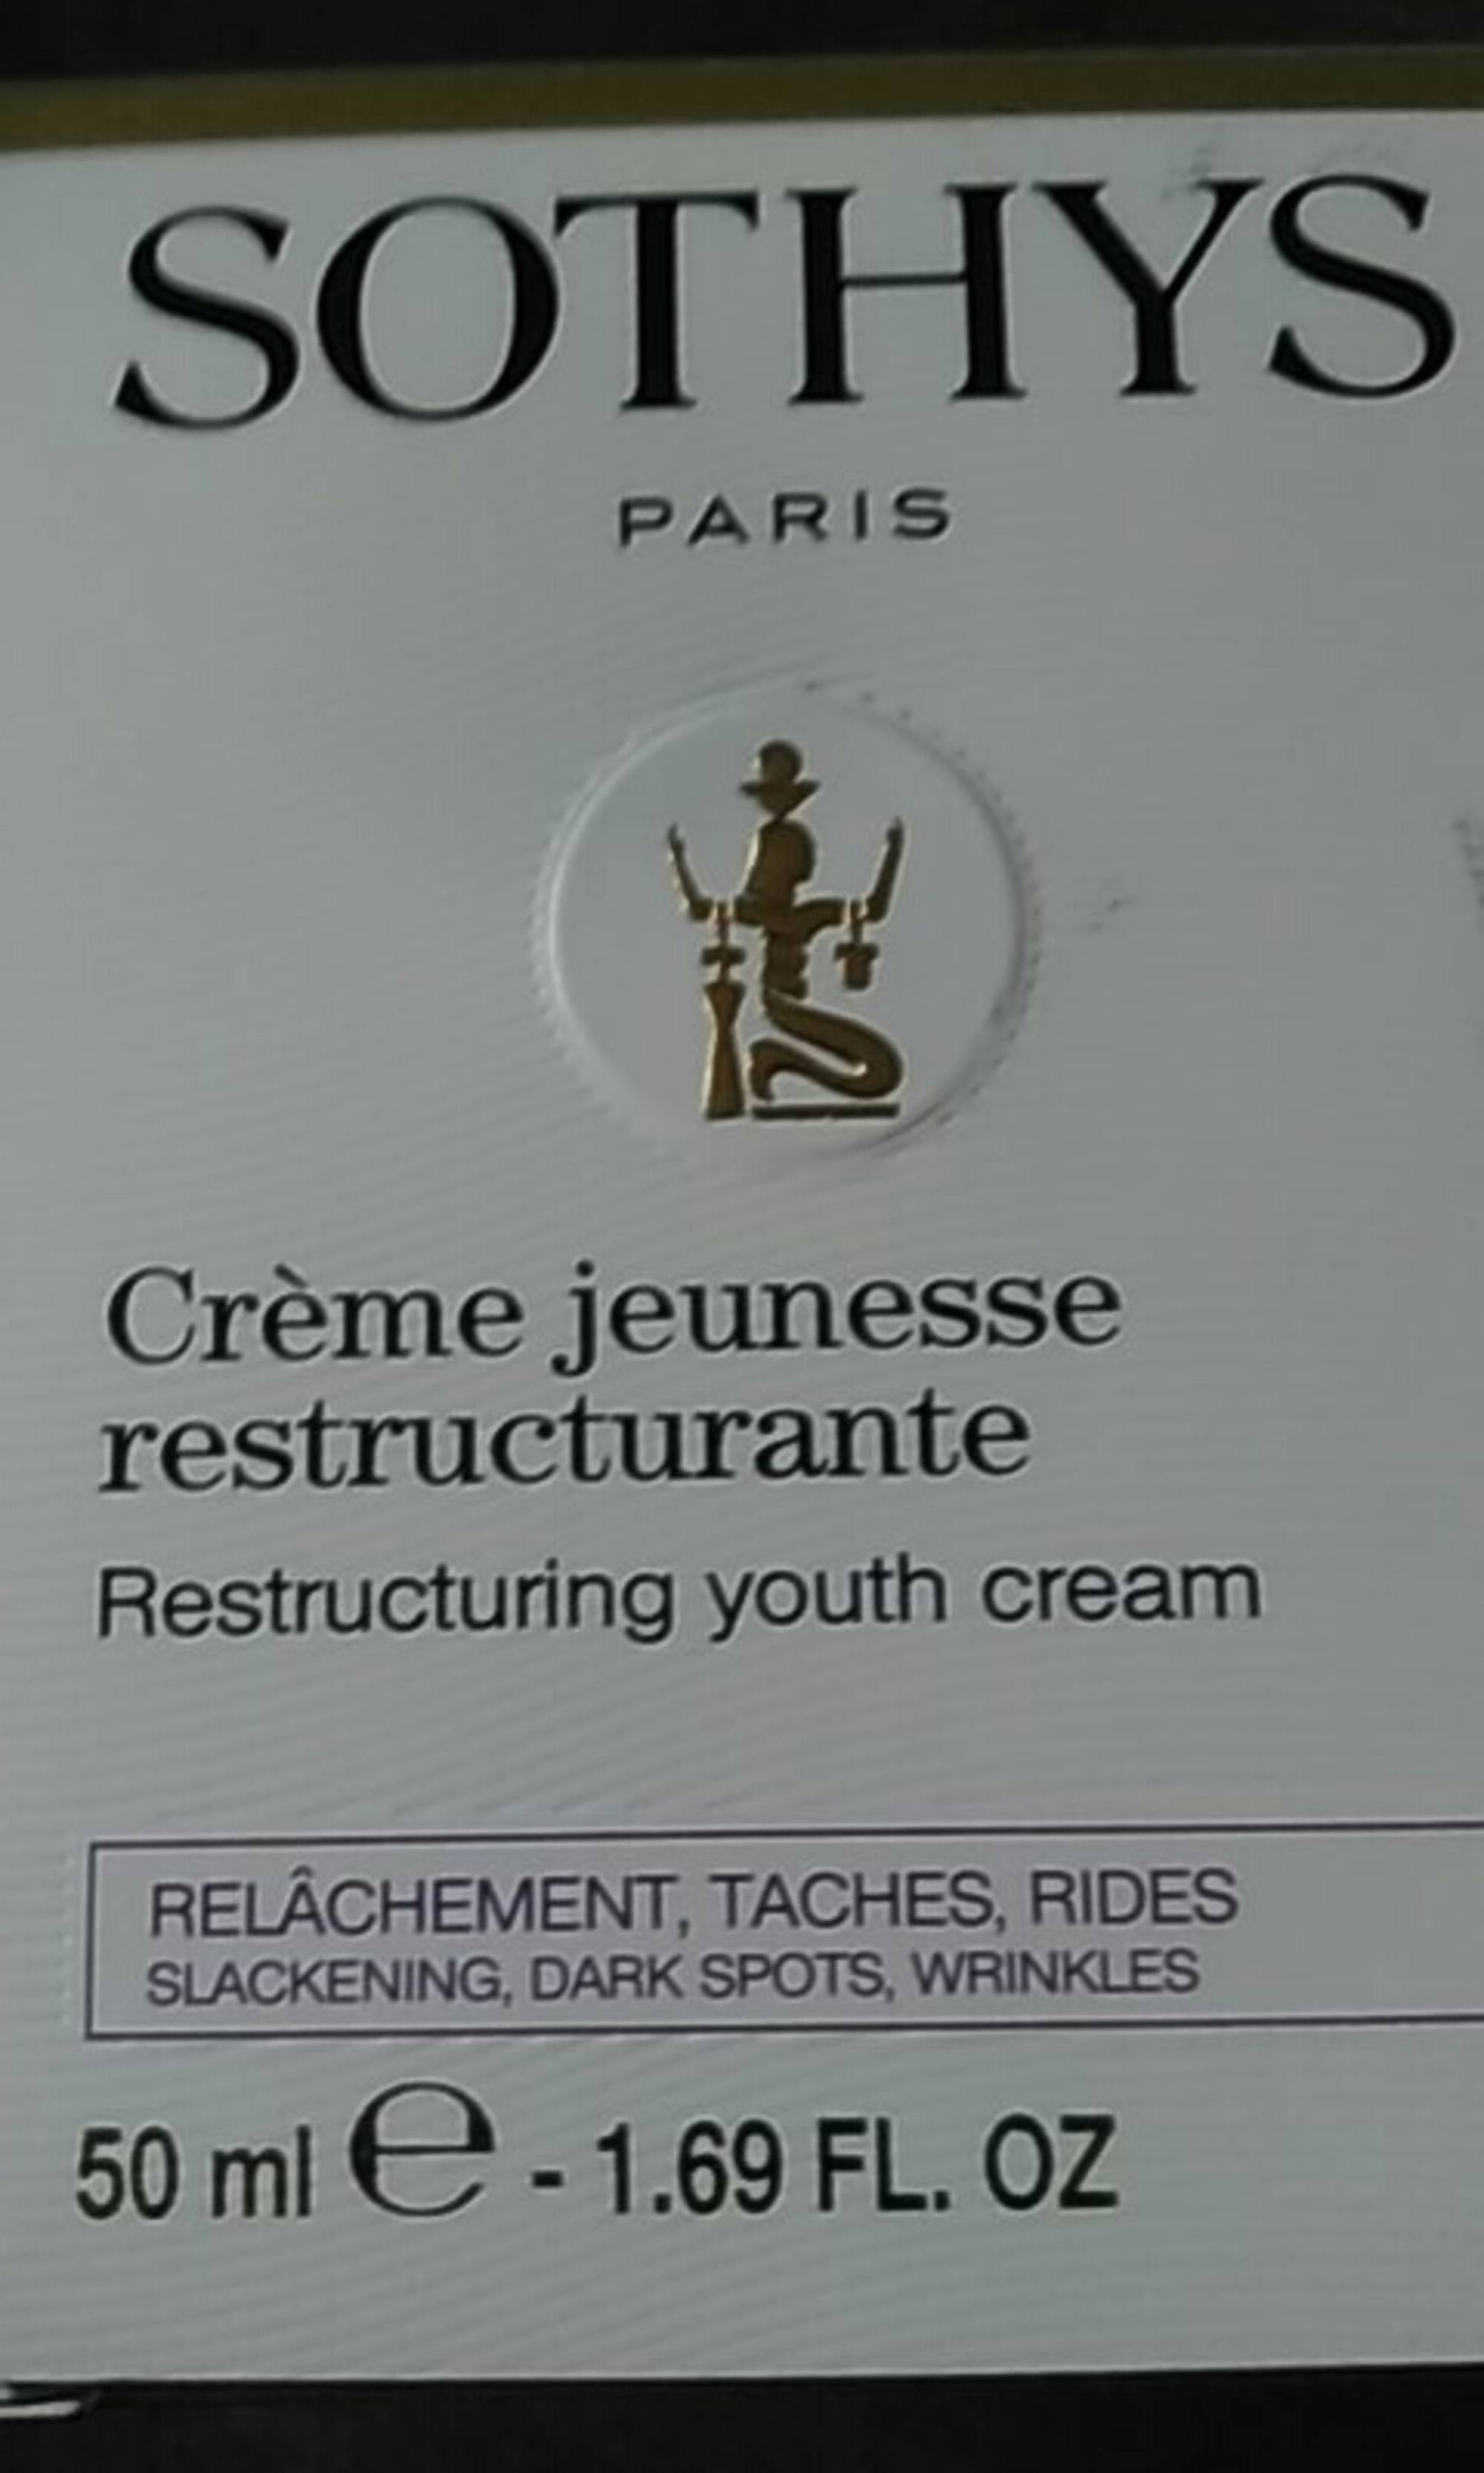 SOTHYS PARIS - Crème jeunesse restructurante